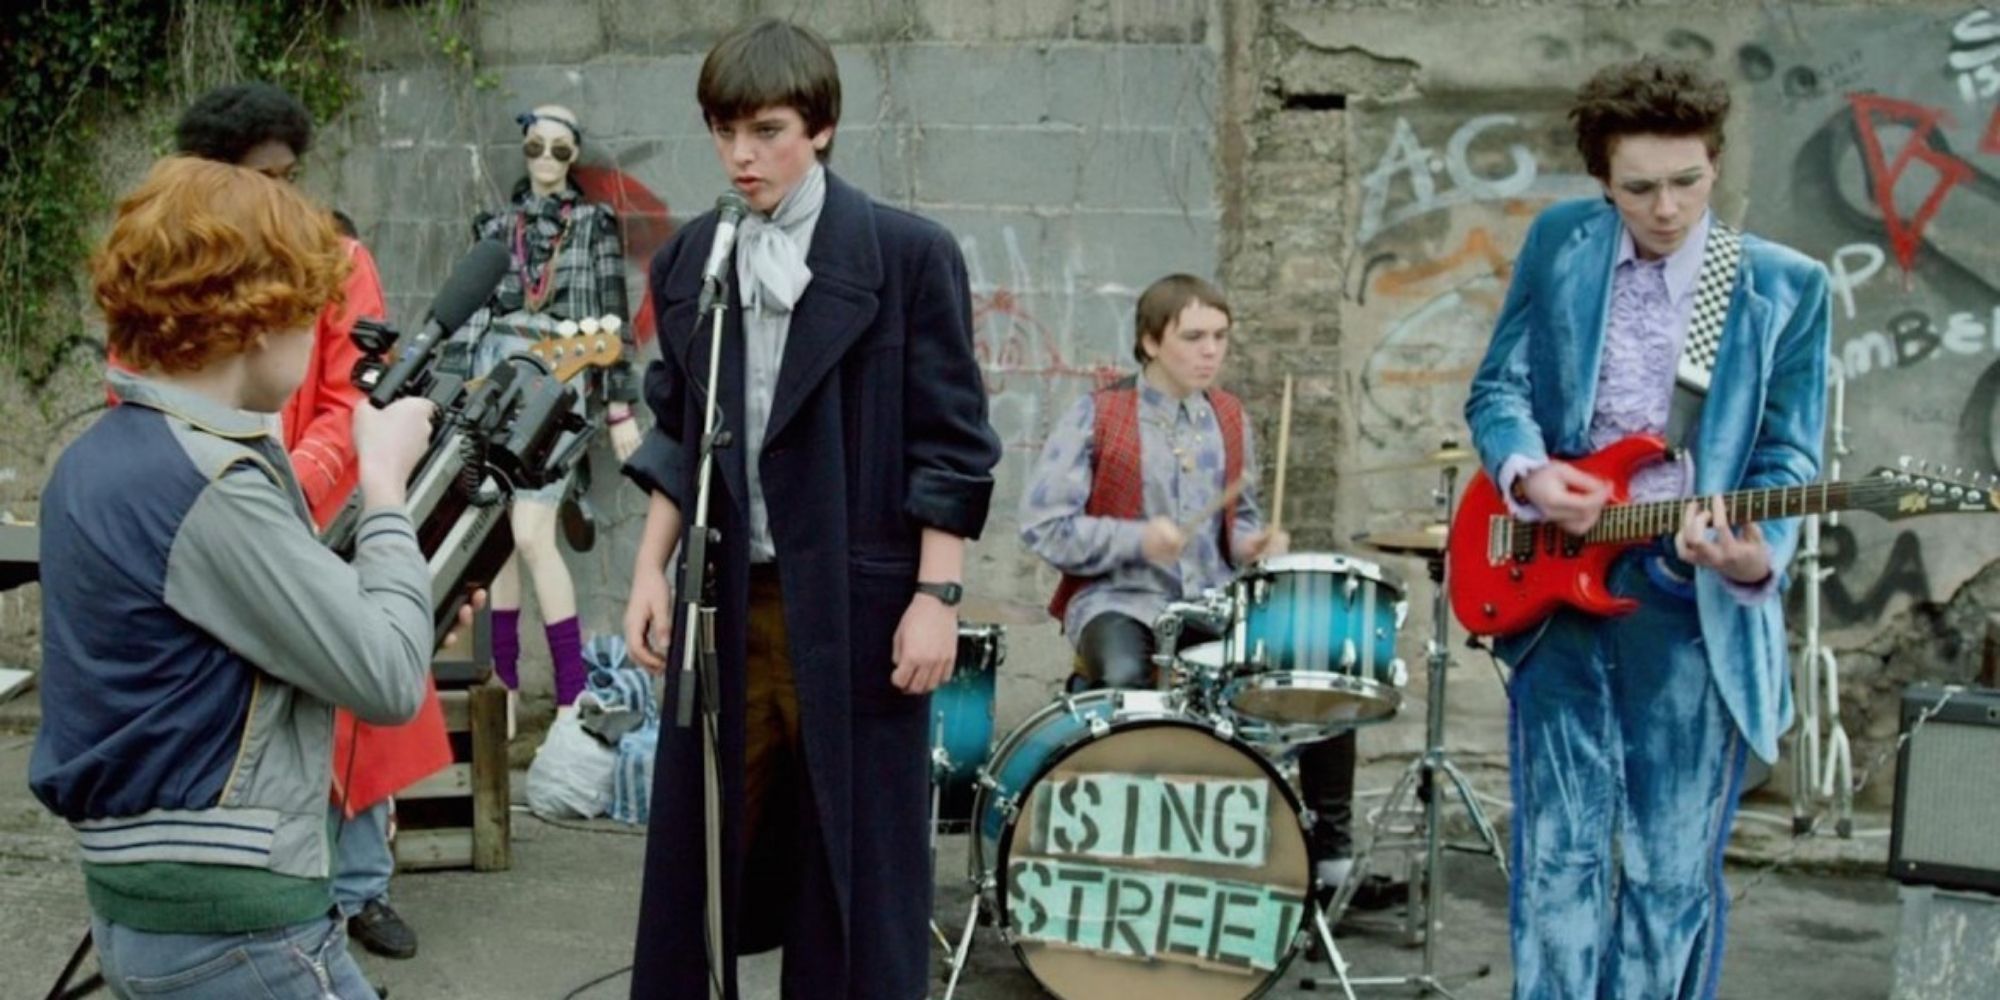 Le groupe de Sing Street tourne un clip vidéo dans Sing Street.